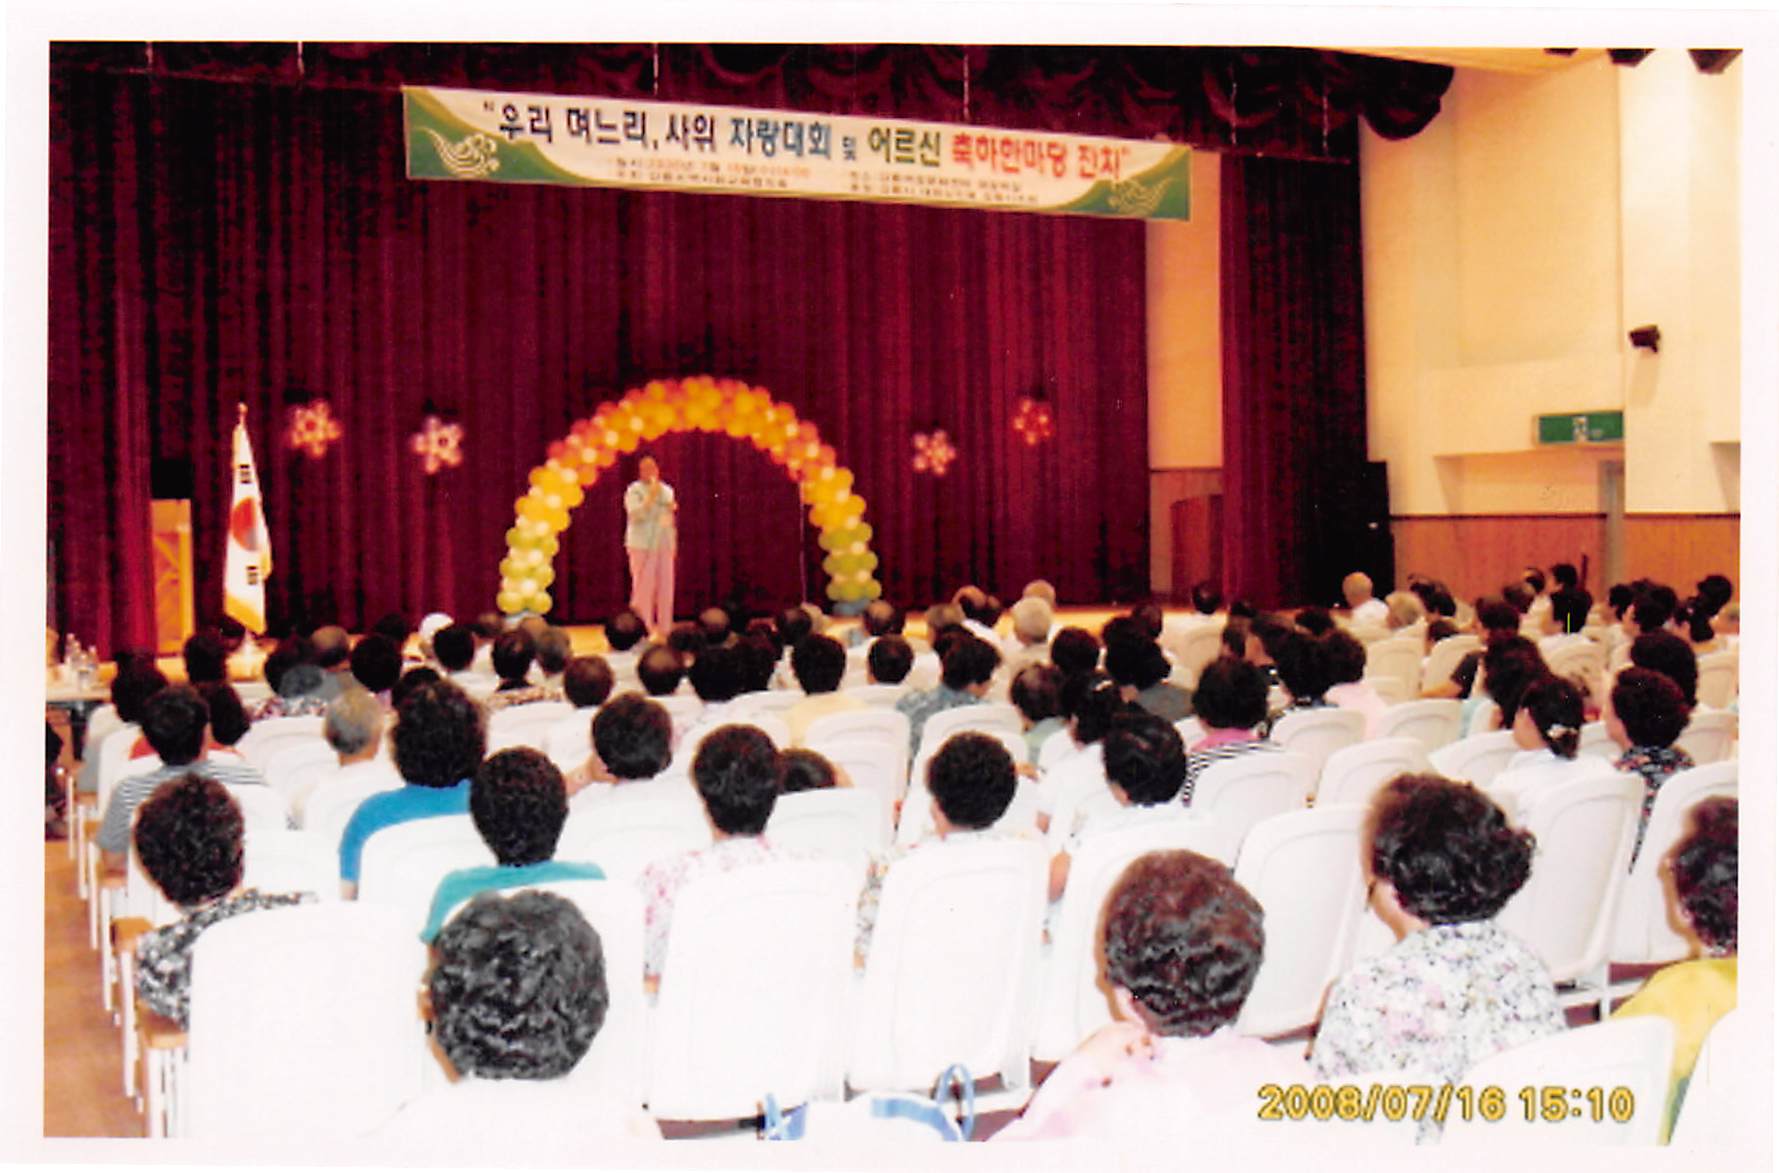 “우리 며느리, 사위 자랑 대회 및 어르신 축하한마당 잔치”, 2008년 7월 16일, 한국지역사회교육협의회 